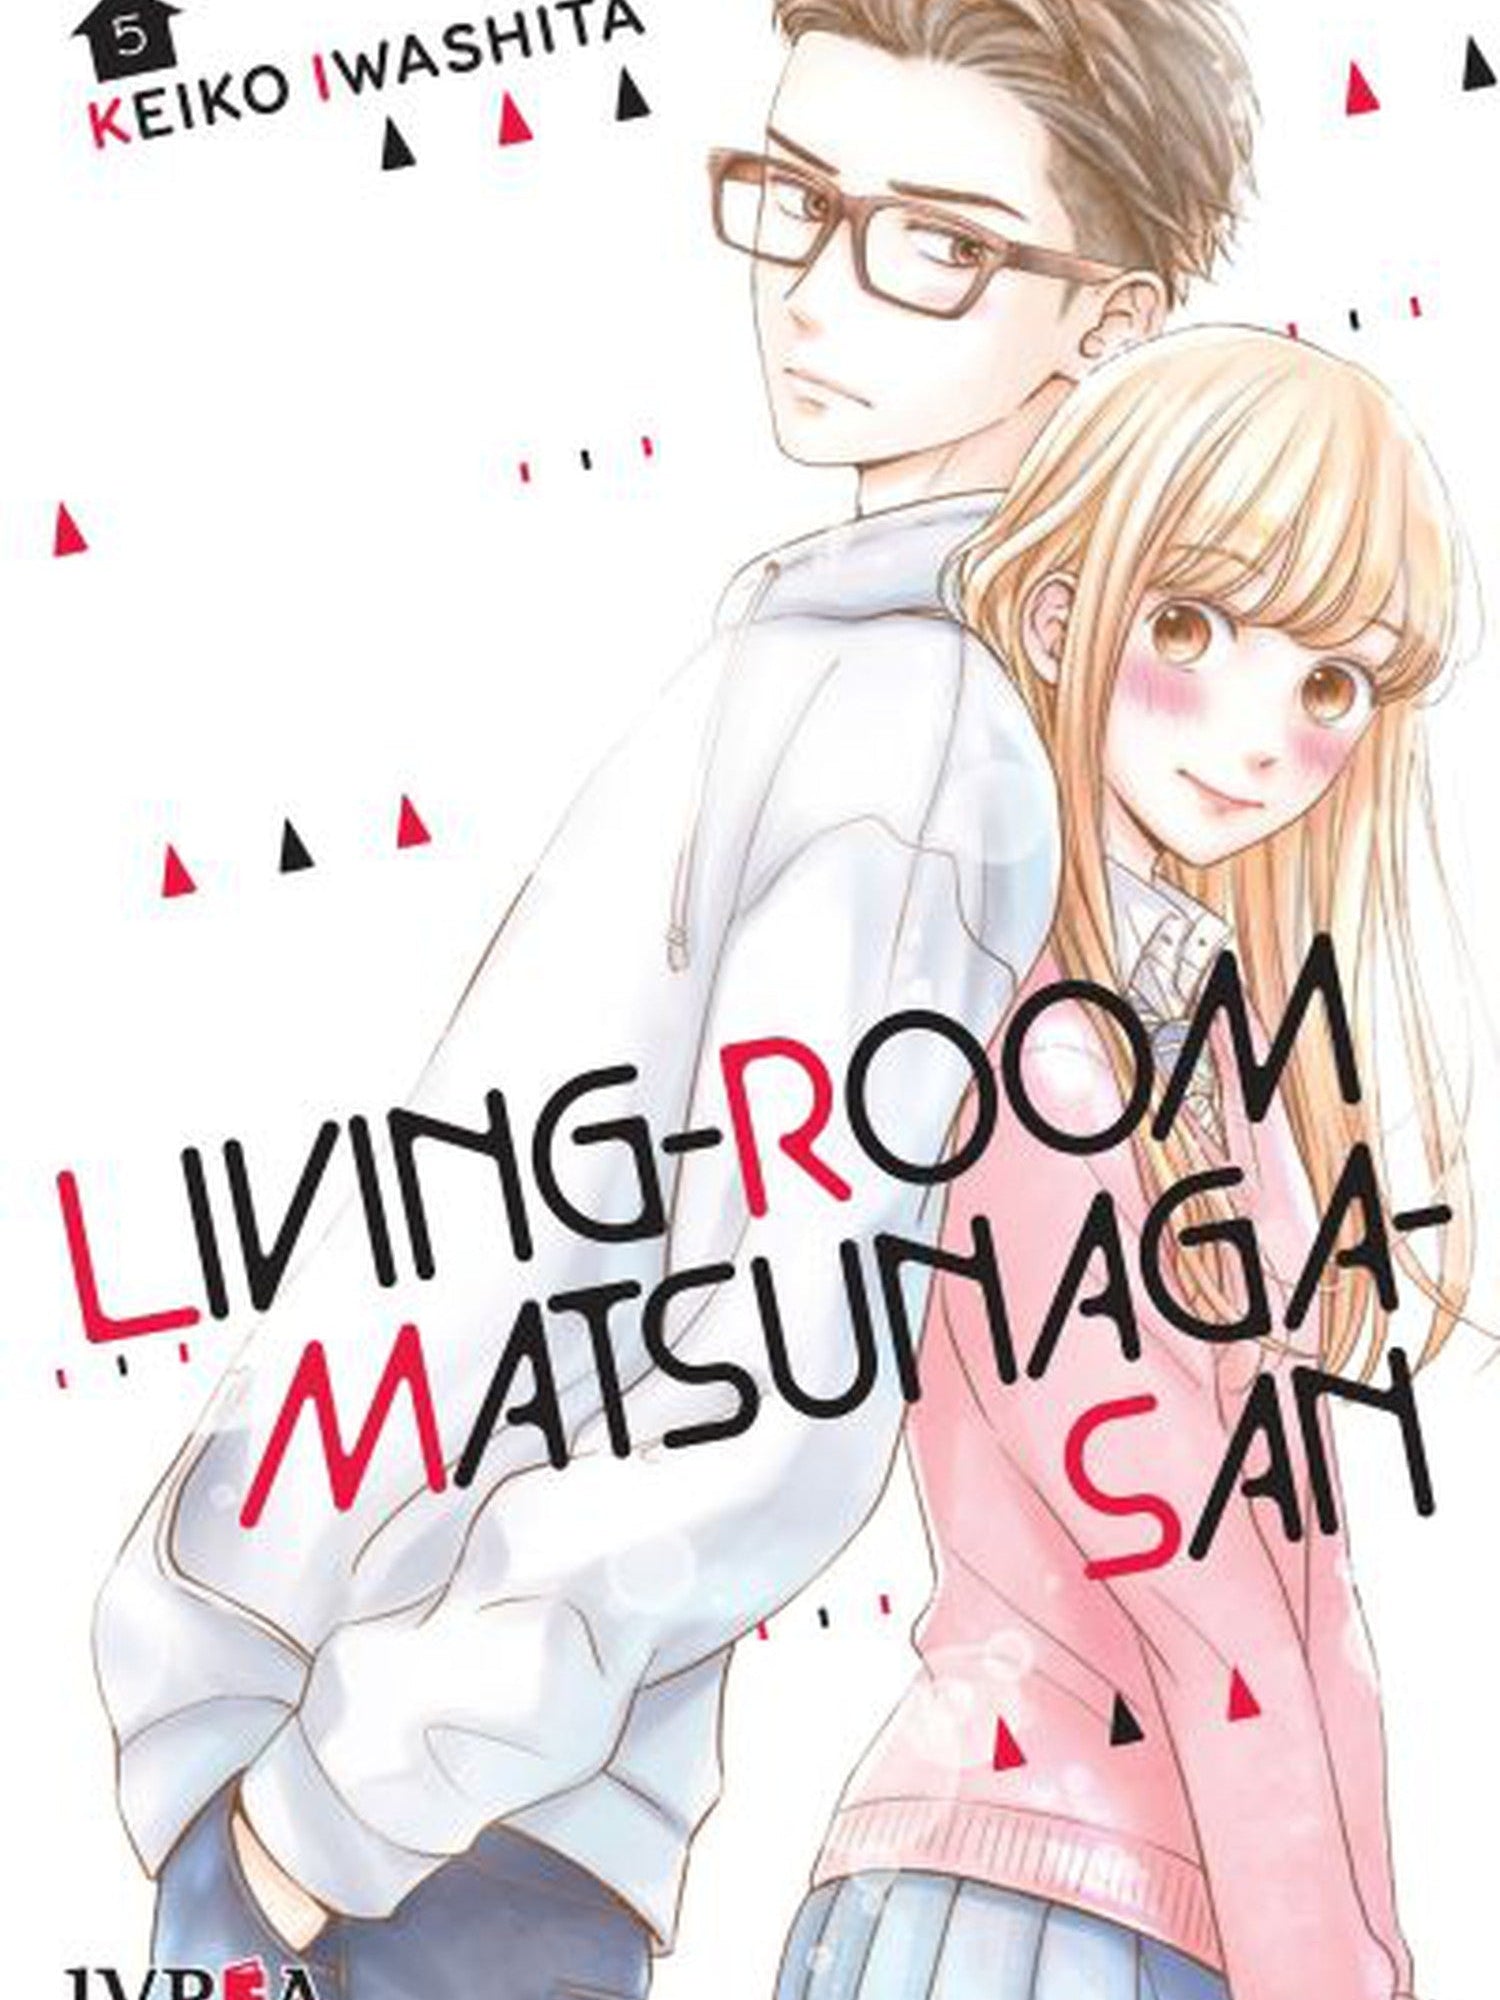 Living-Room Matsunaga-san 05 Ivrea Argentina ENcuadrocomics